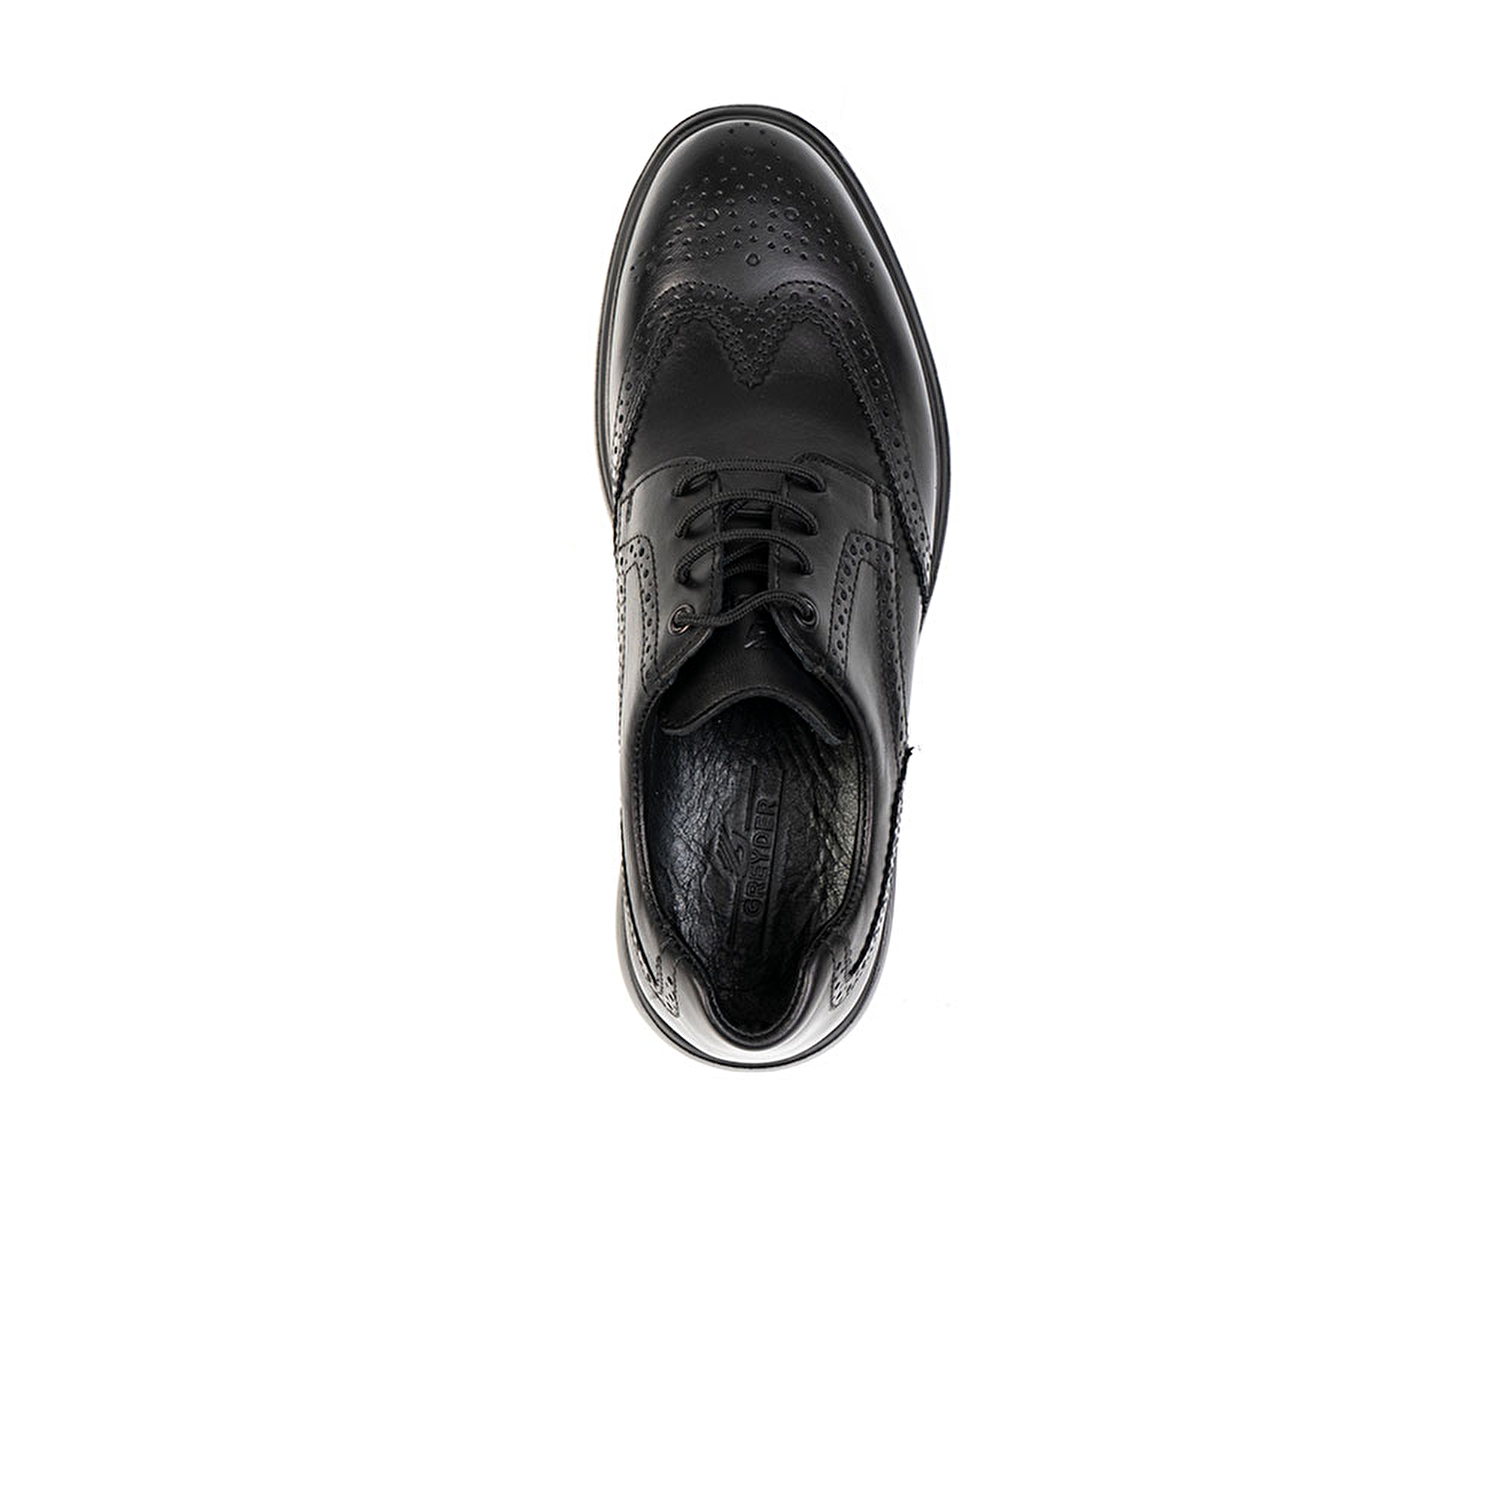 Erkek Ayakkabı Siyah 14322-5